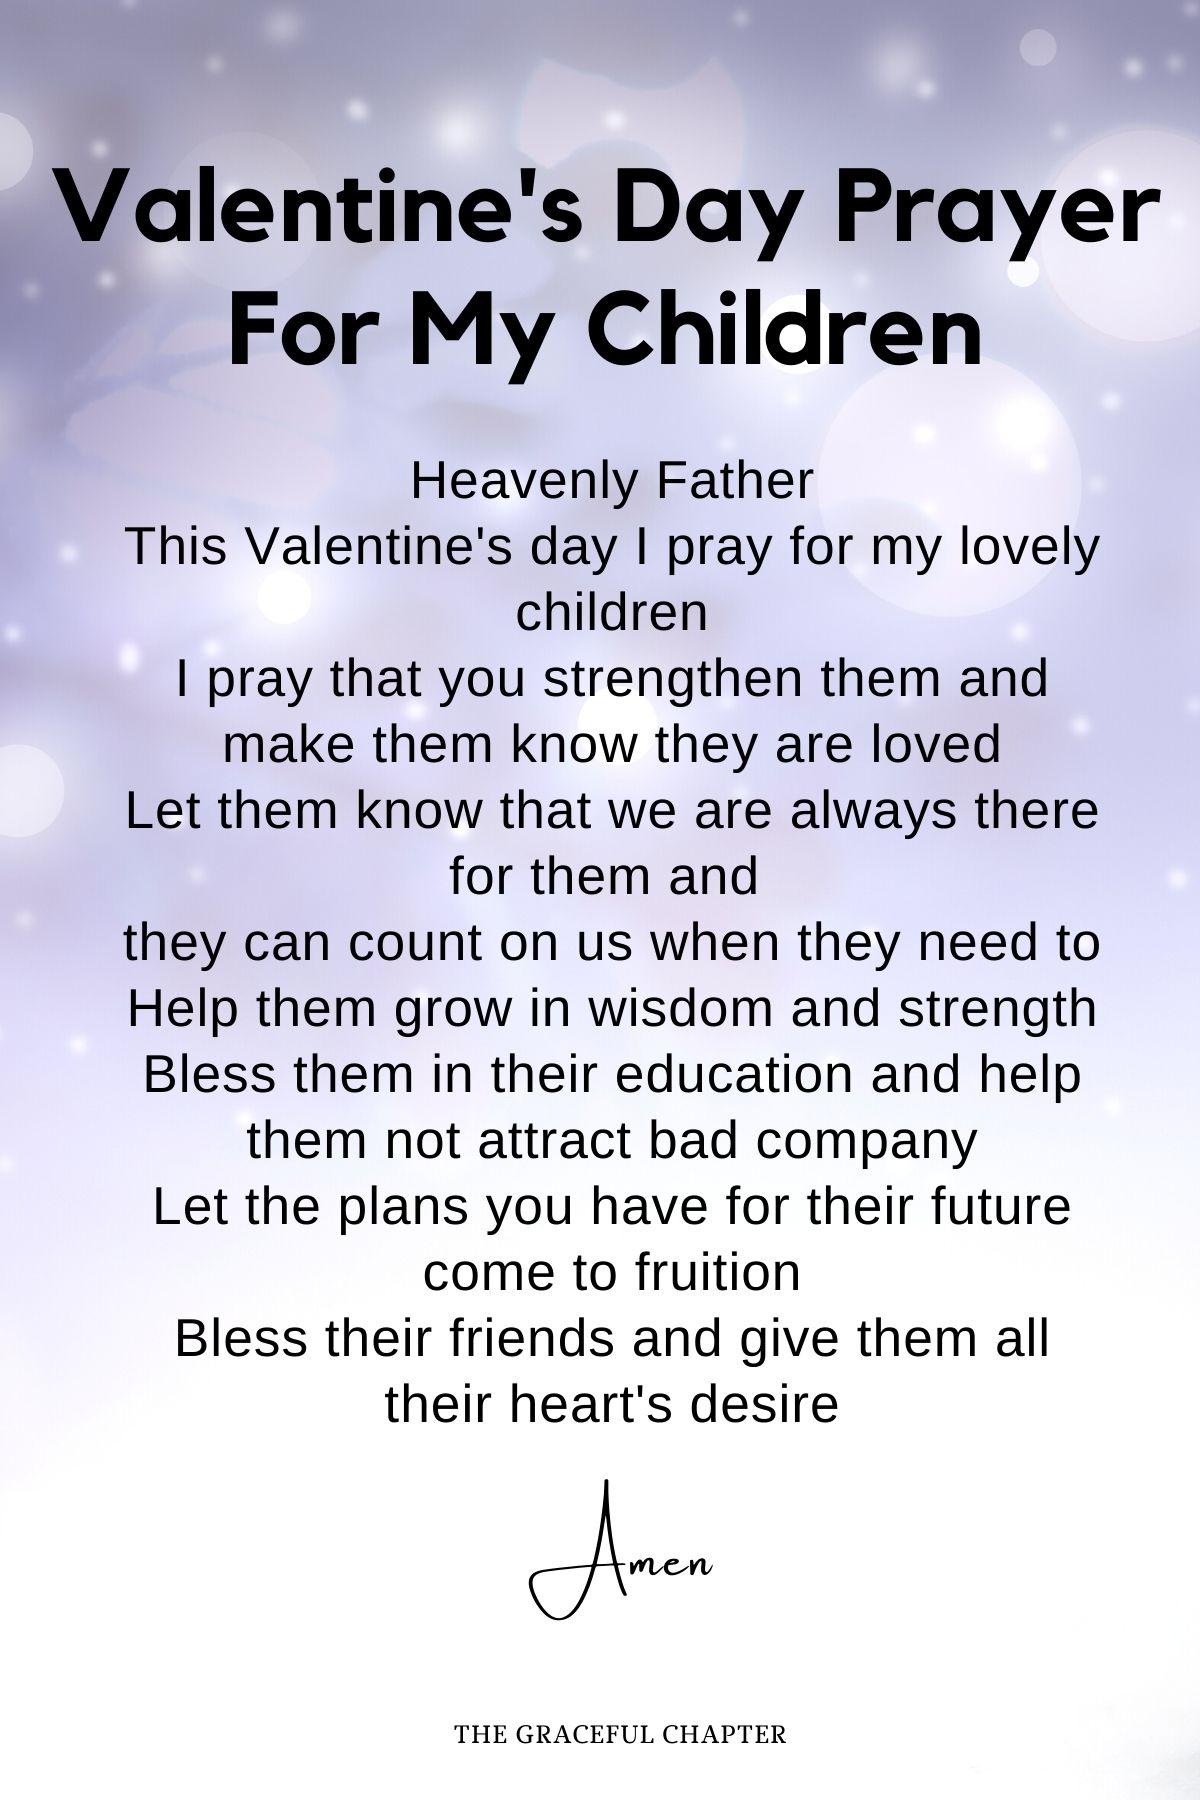 Valentine's day prayer for my children